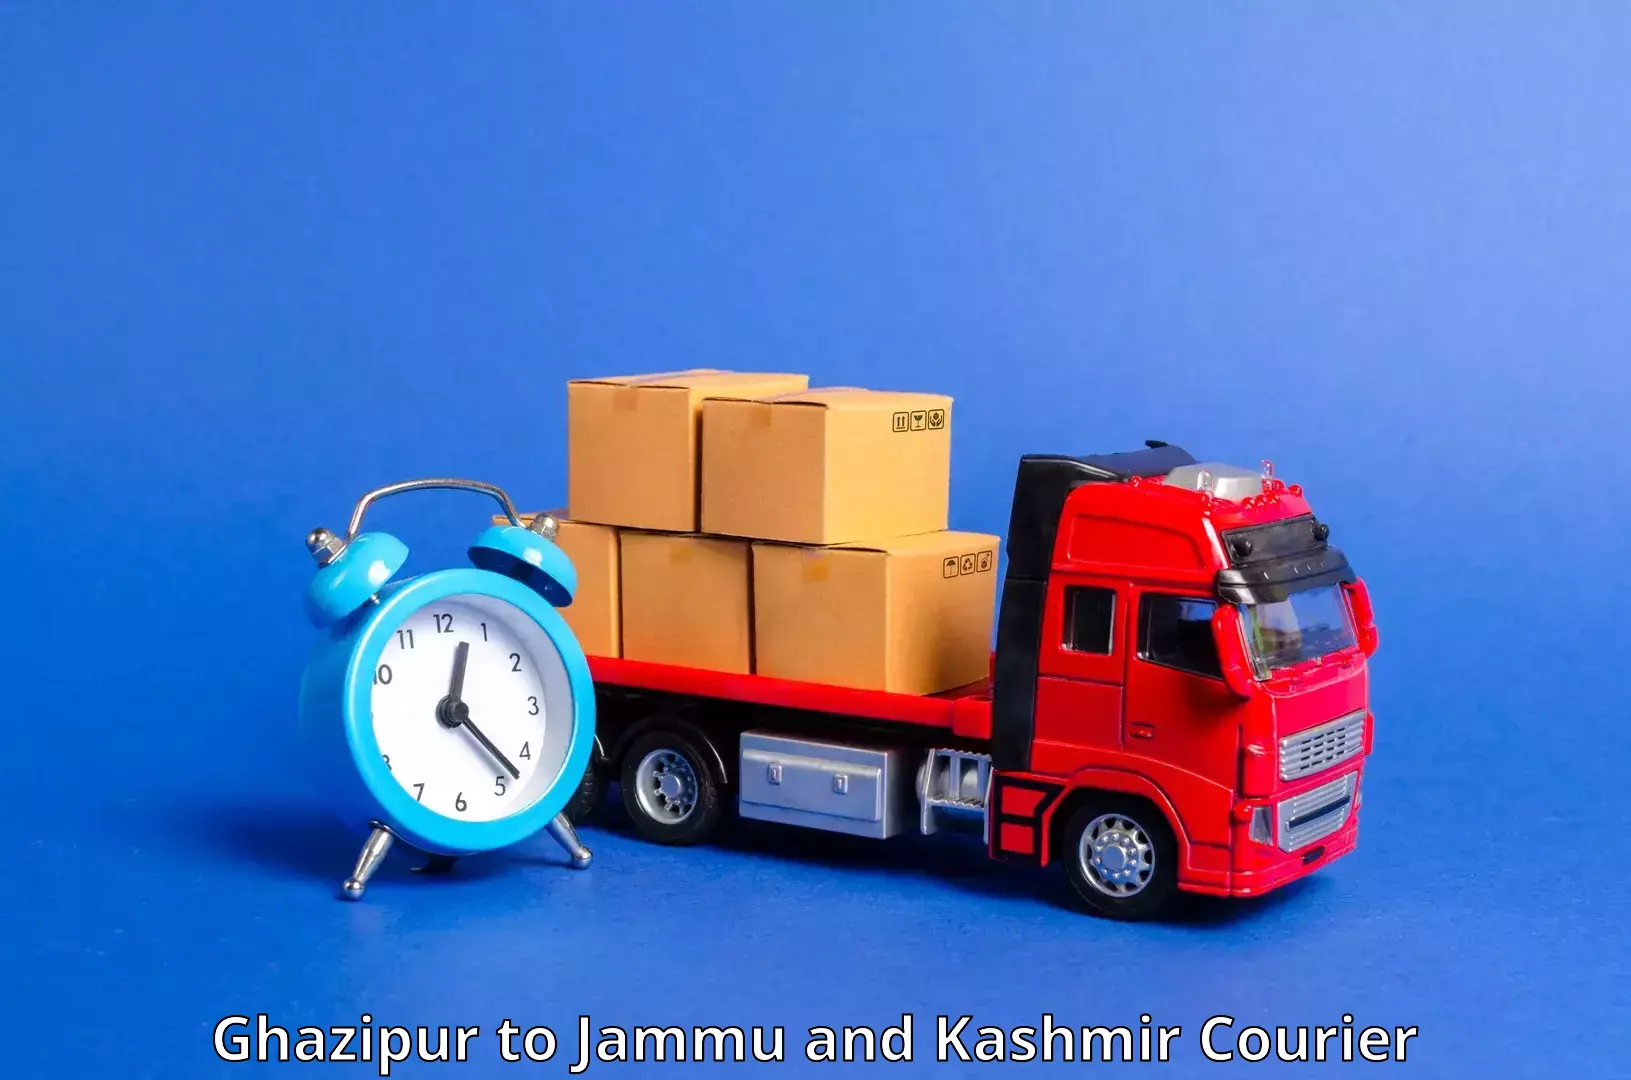 Air courier services Ghazipur to Srinagar Kashmir